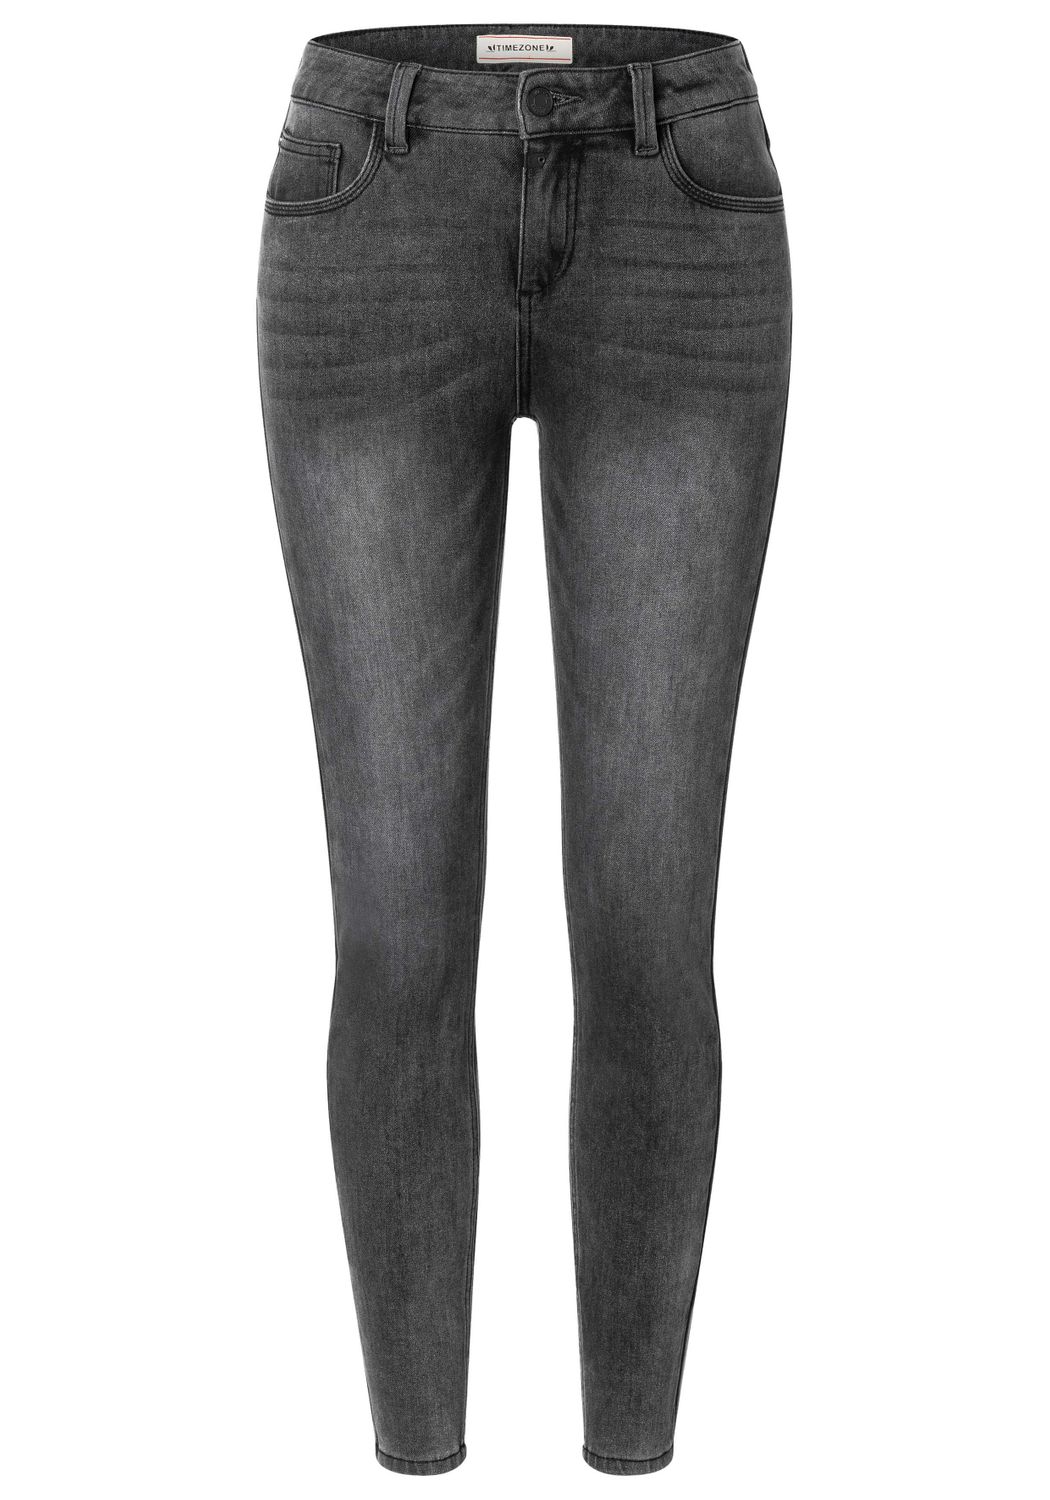 TIMEZONE Damen Jeans TIGHT ALEENATZ WOMANSHAPE - Tight Fit - Grau - Vulcano günstig online kaufen